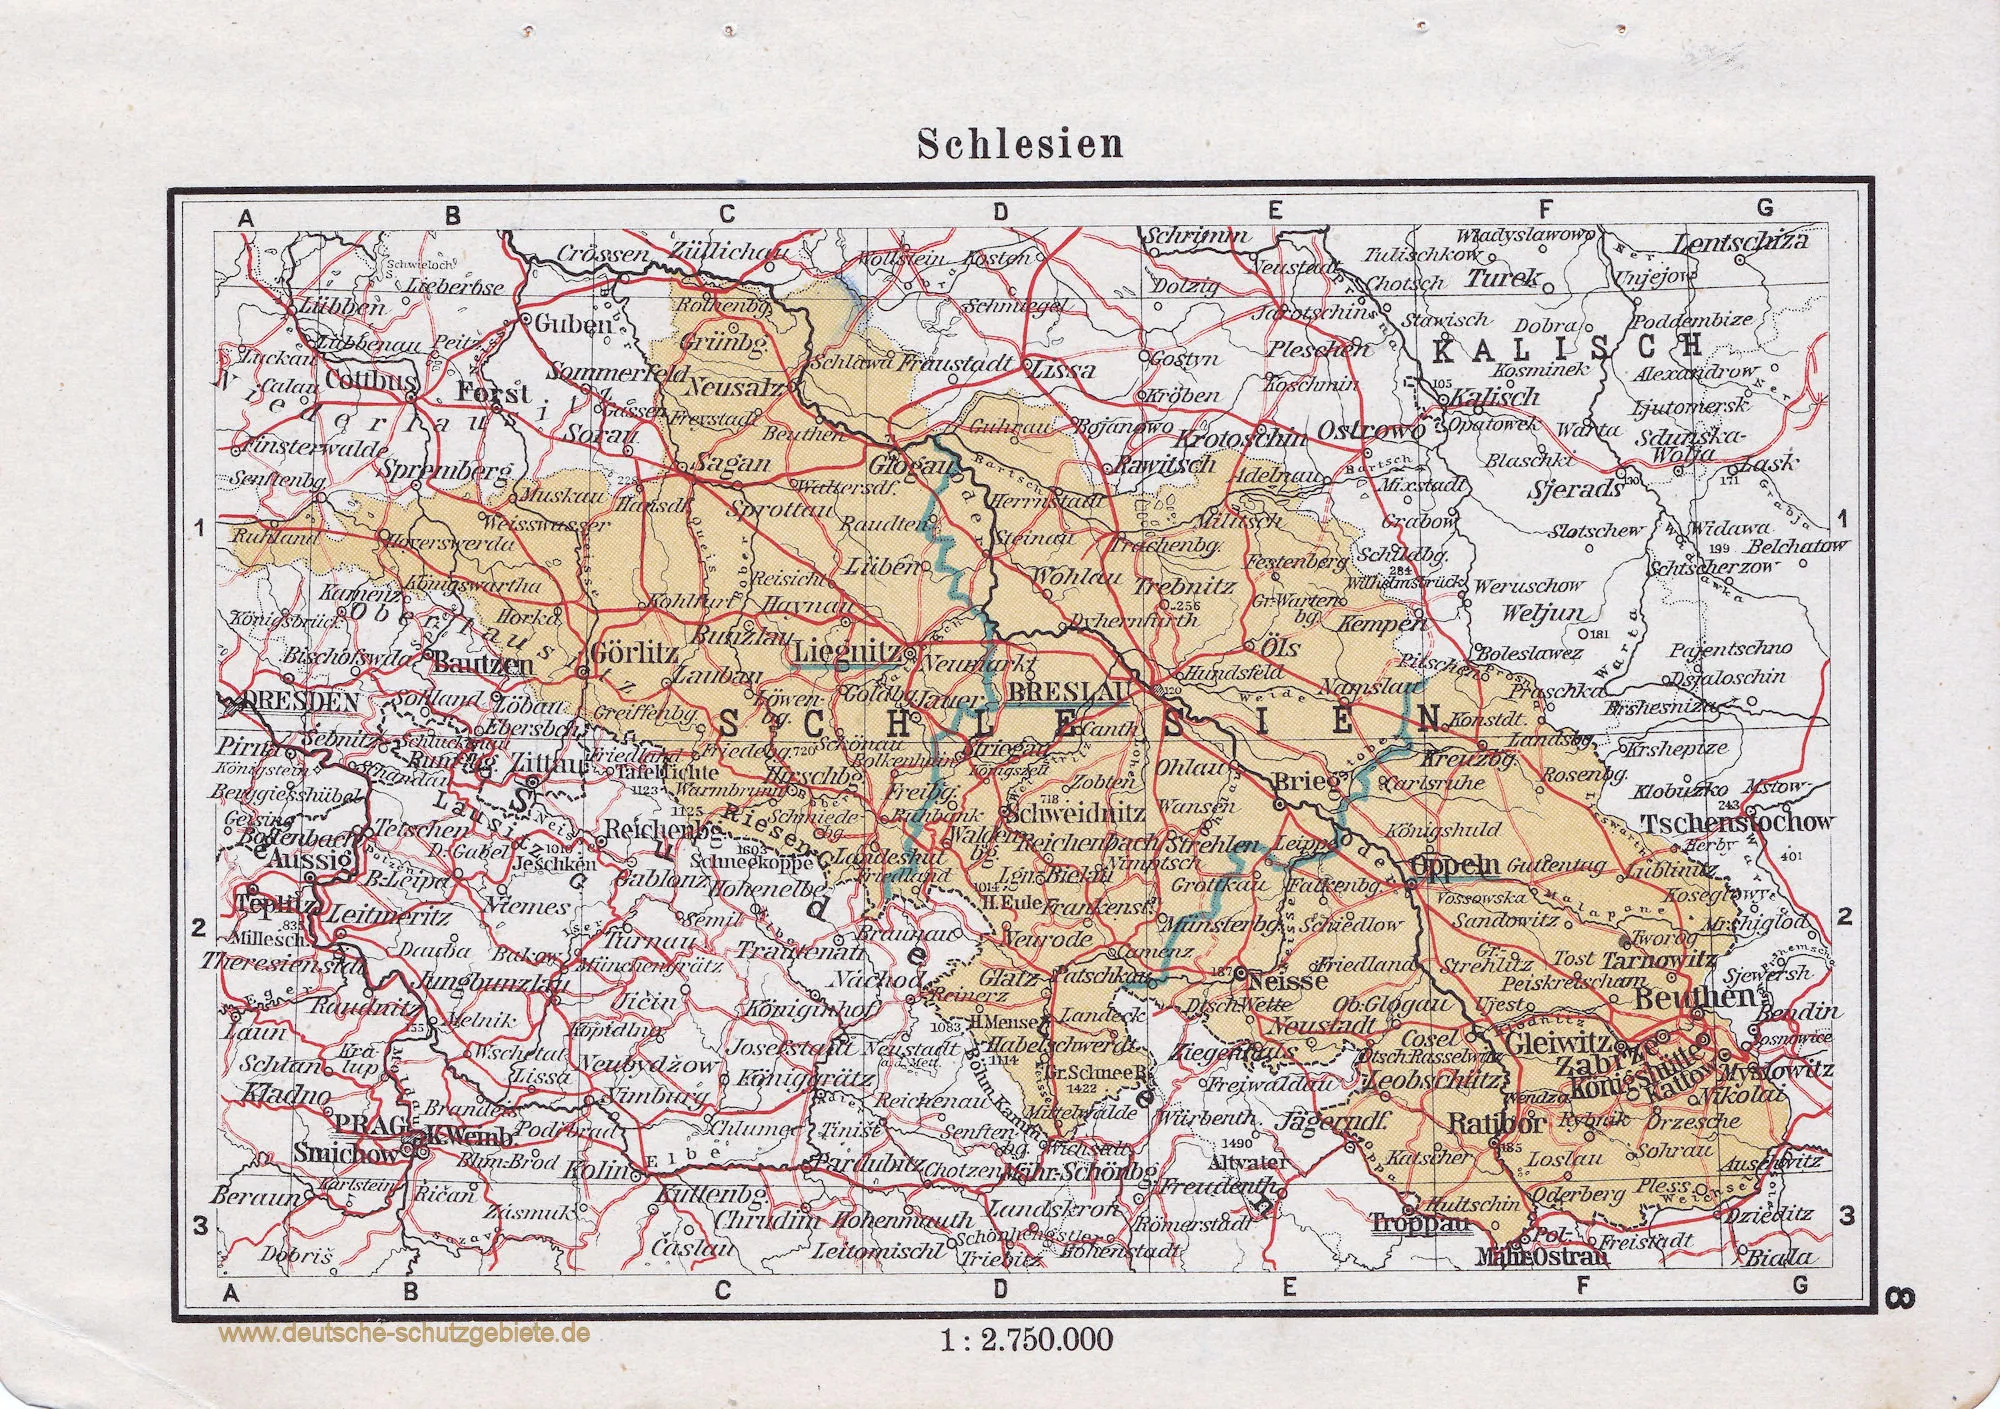 Mapa Śląska / Schlesien źródło: https://deutsche-schutzgebiete.de/